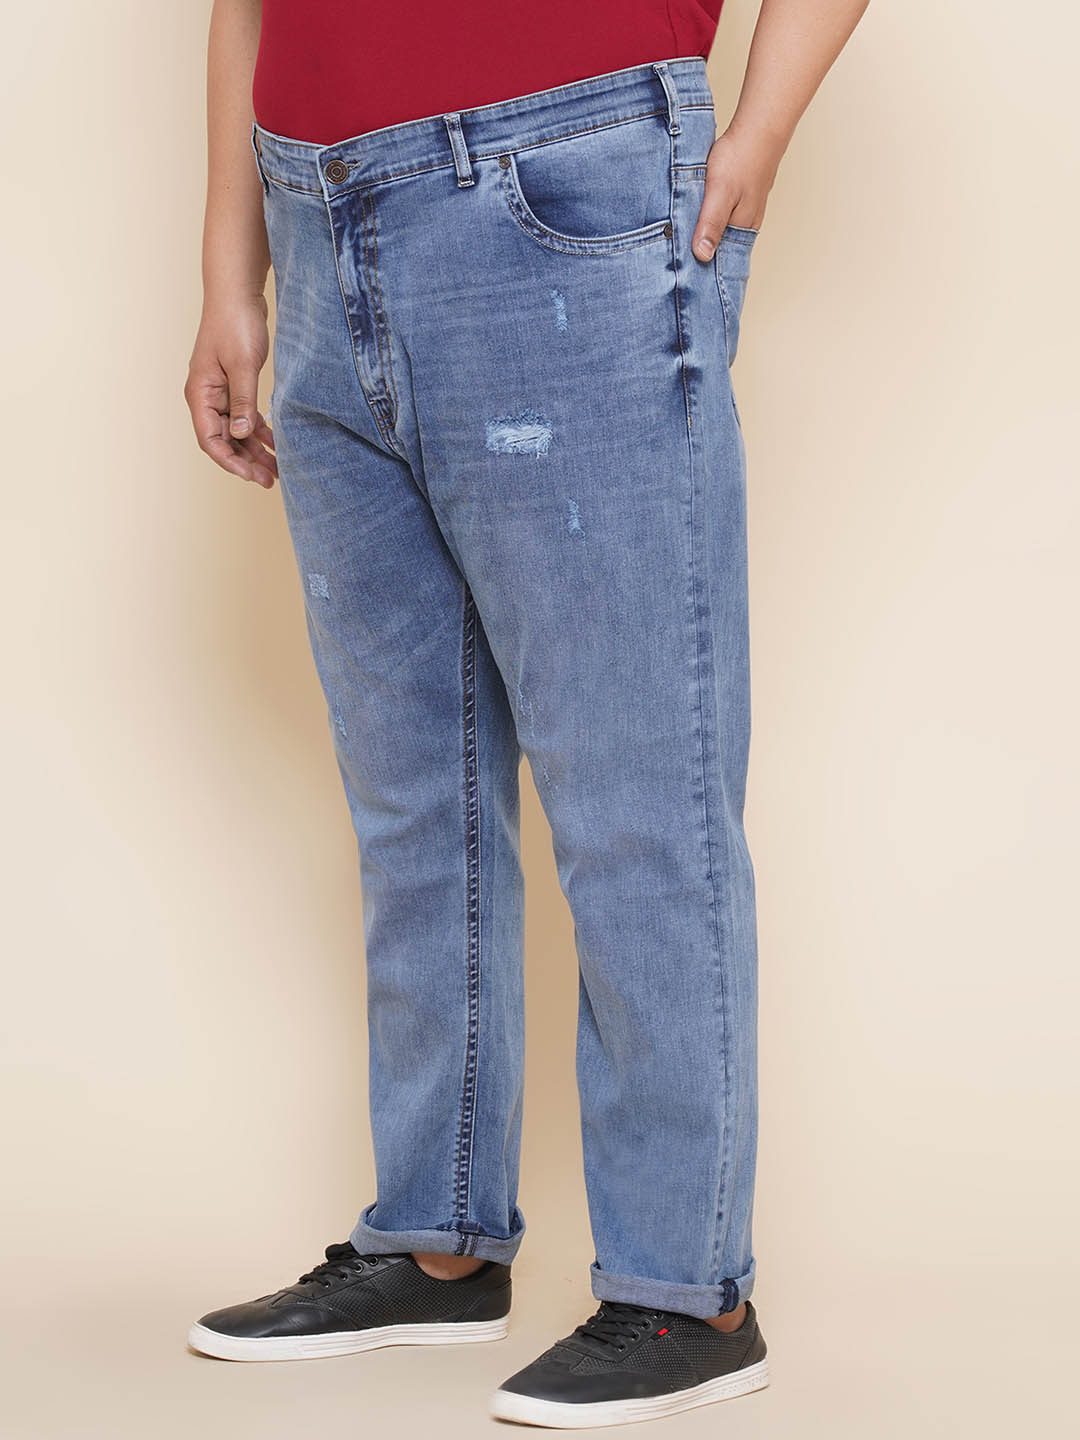 bottomwear/jeans/JPJ12305/jpj12305-4.jpg